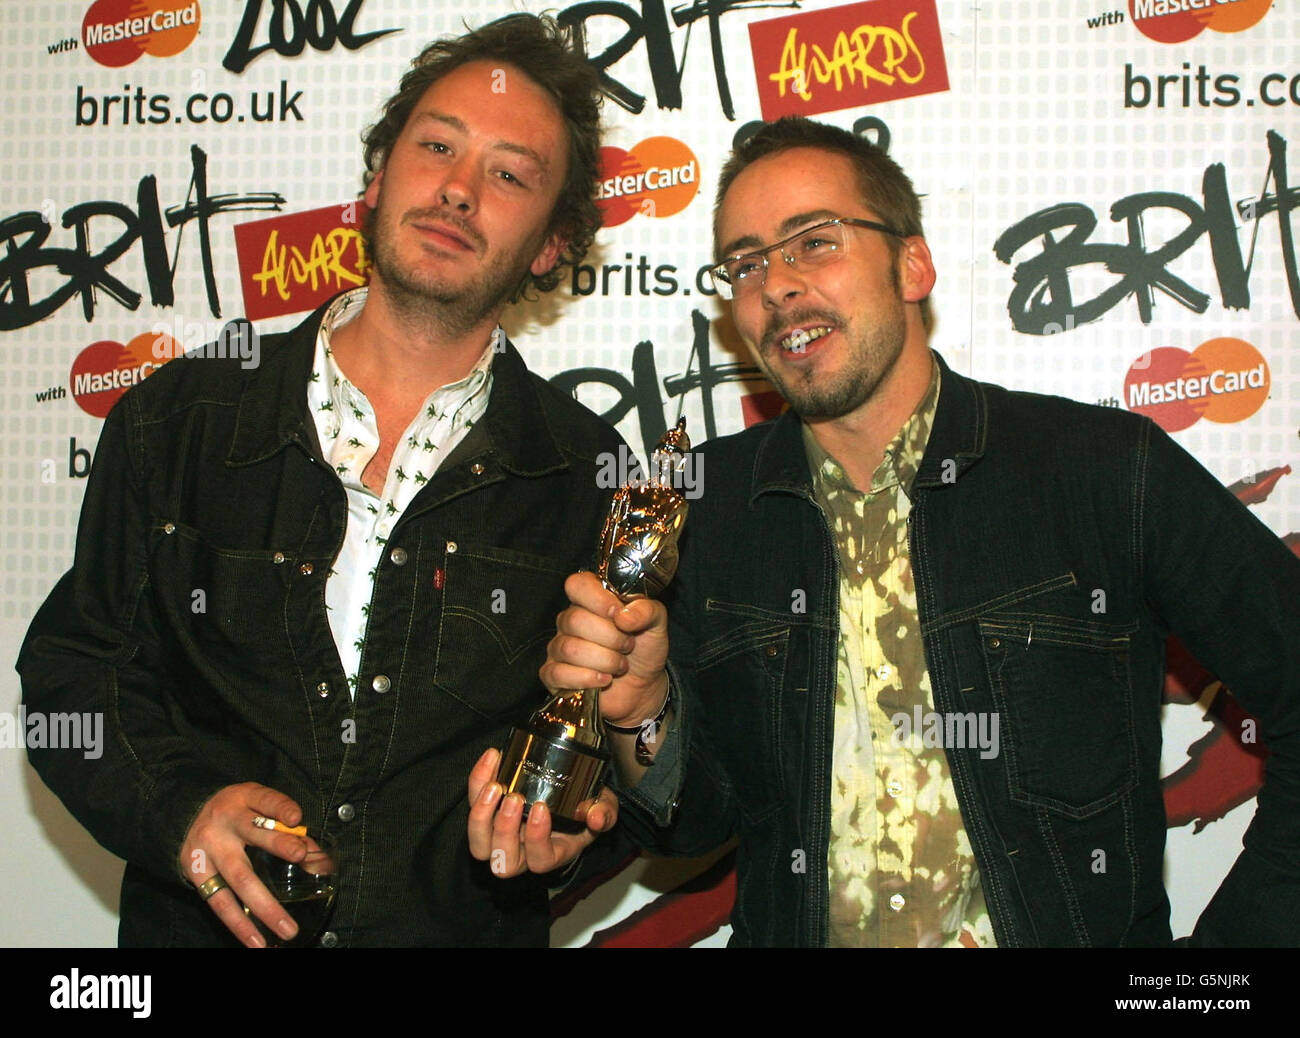 Il duo di danza britannica Basement Jacks incontra i media con il backstage "Brit Award 2002" all'evento di Londra. I 'Brit Awards' sono i premi più importanti del calendario musicale britannico. Hanno vinto la migliore categoria di ballo. Foto Stock